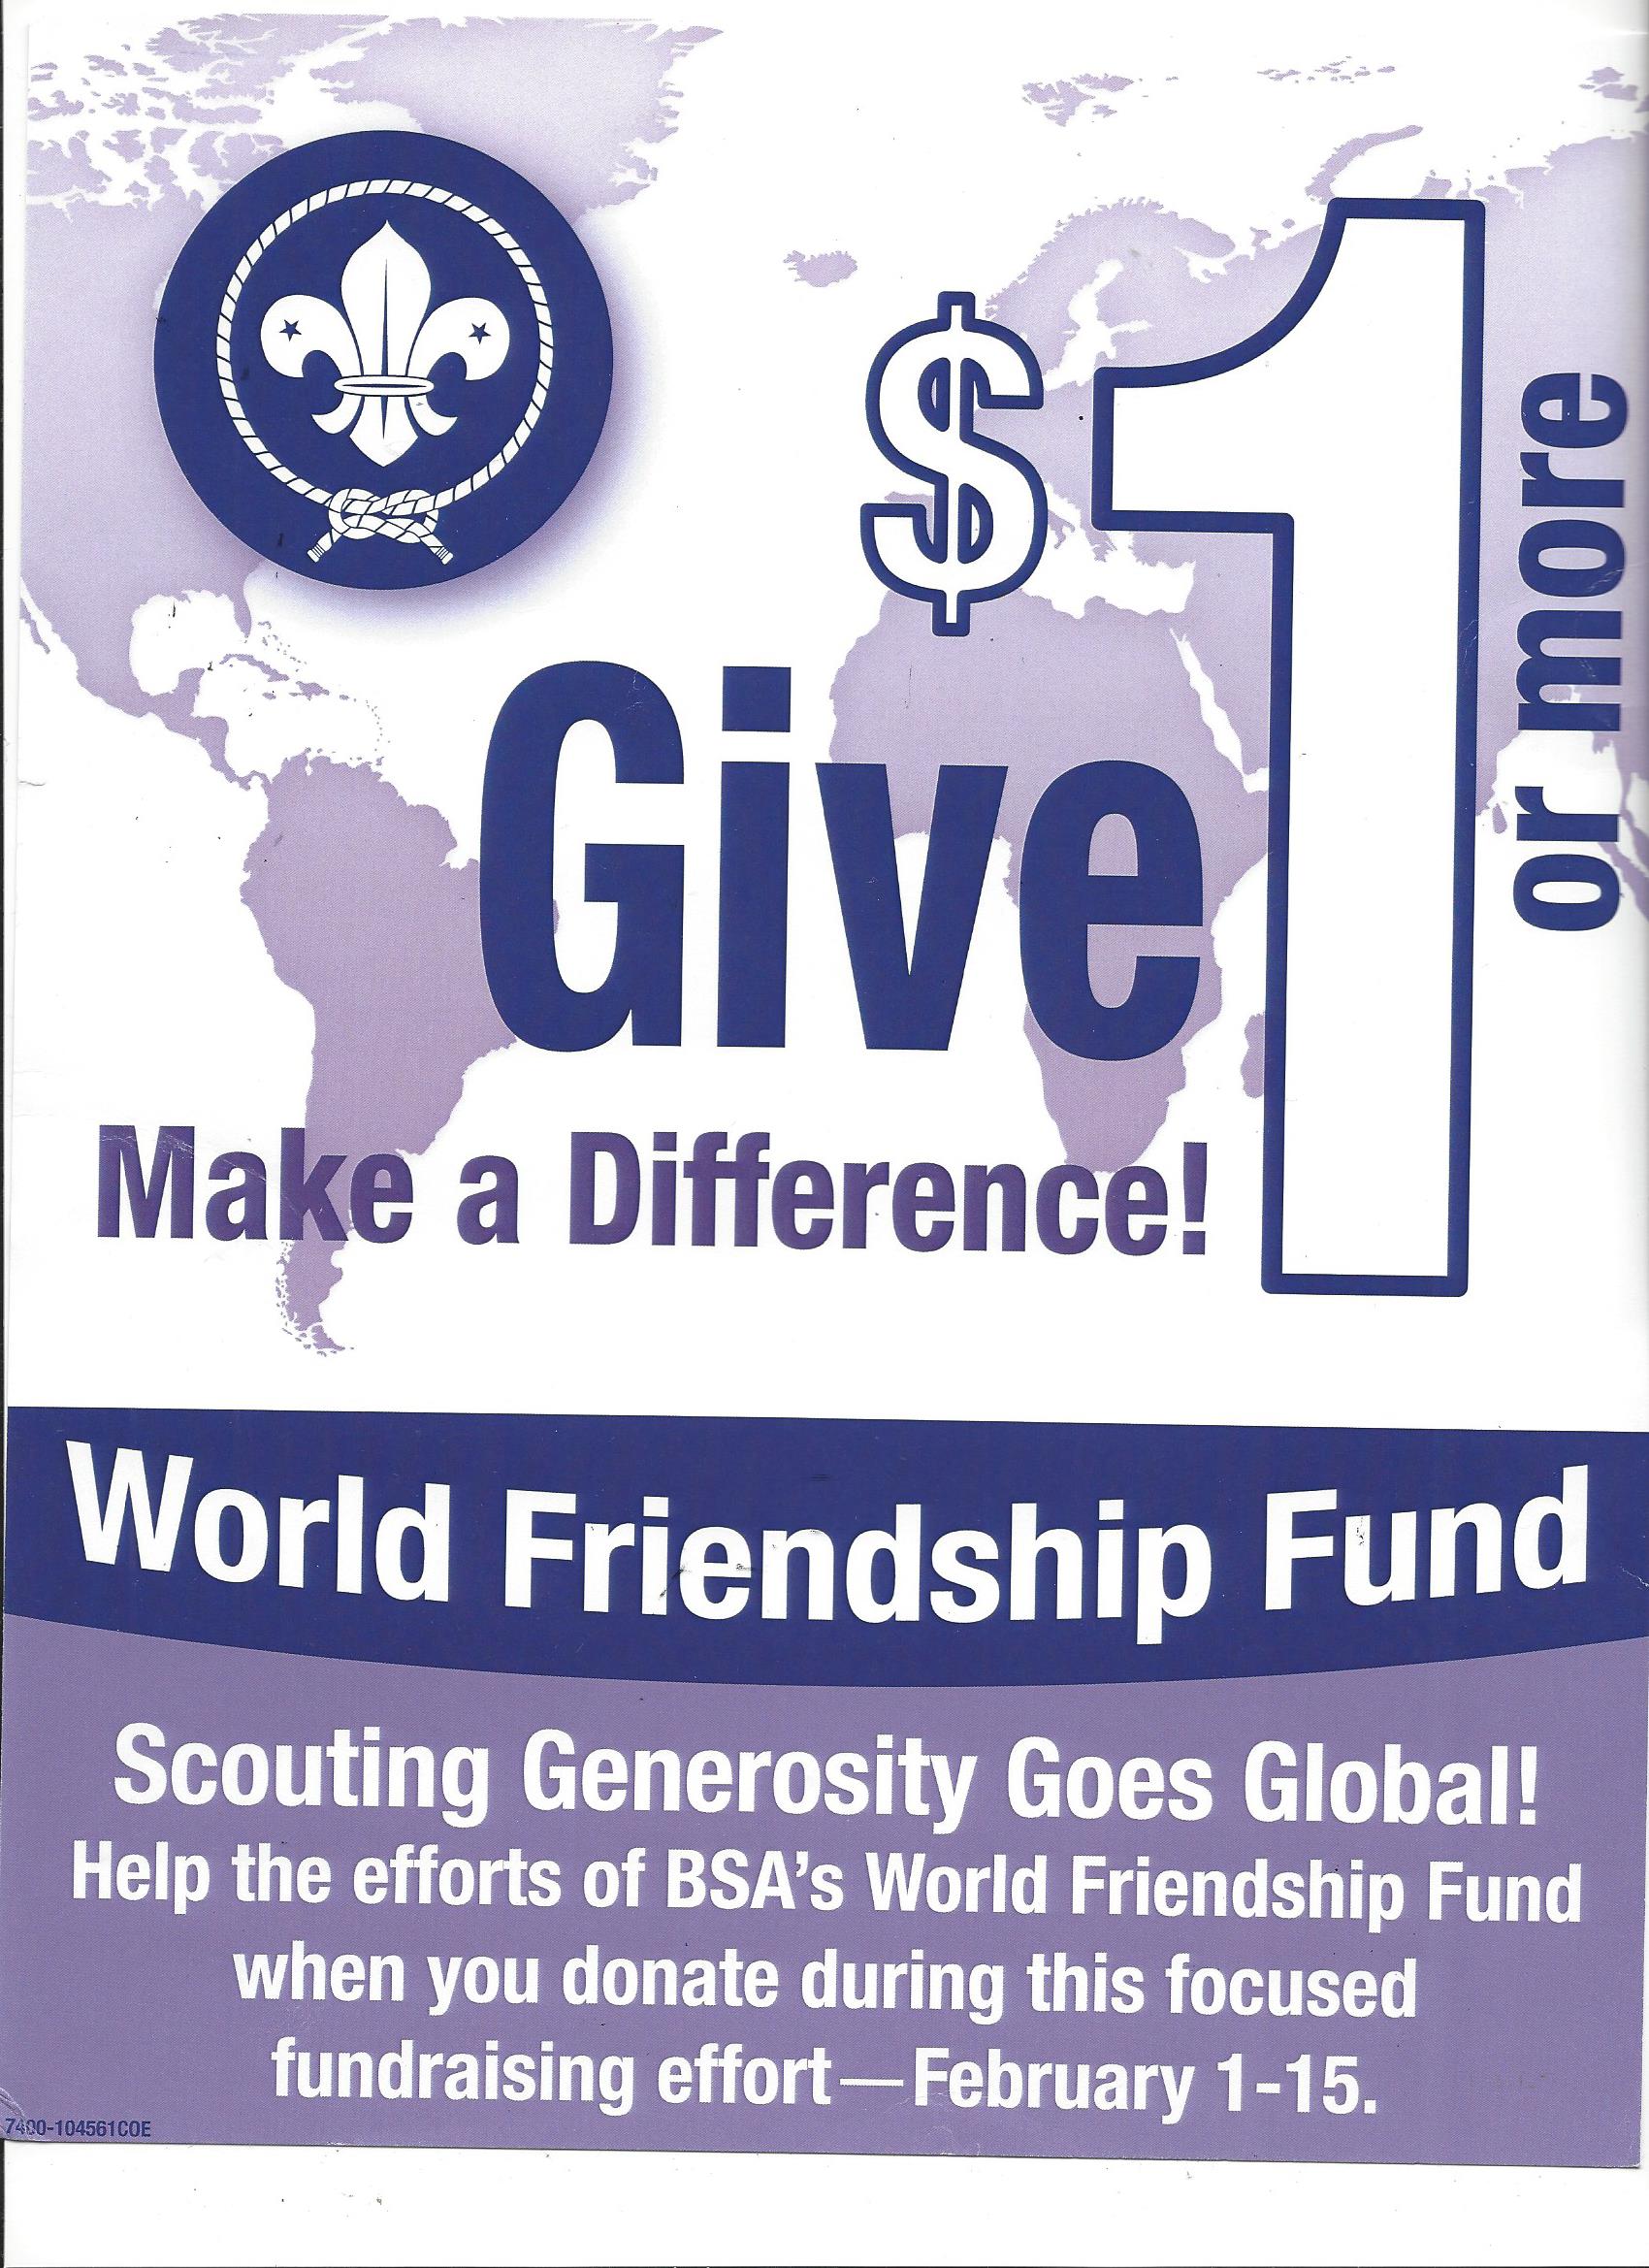 Bsa world friendship fund